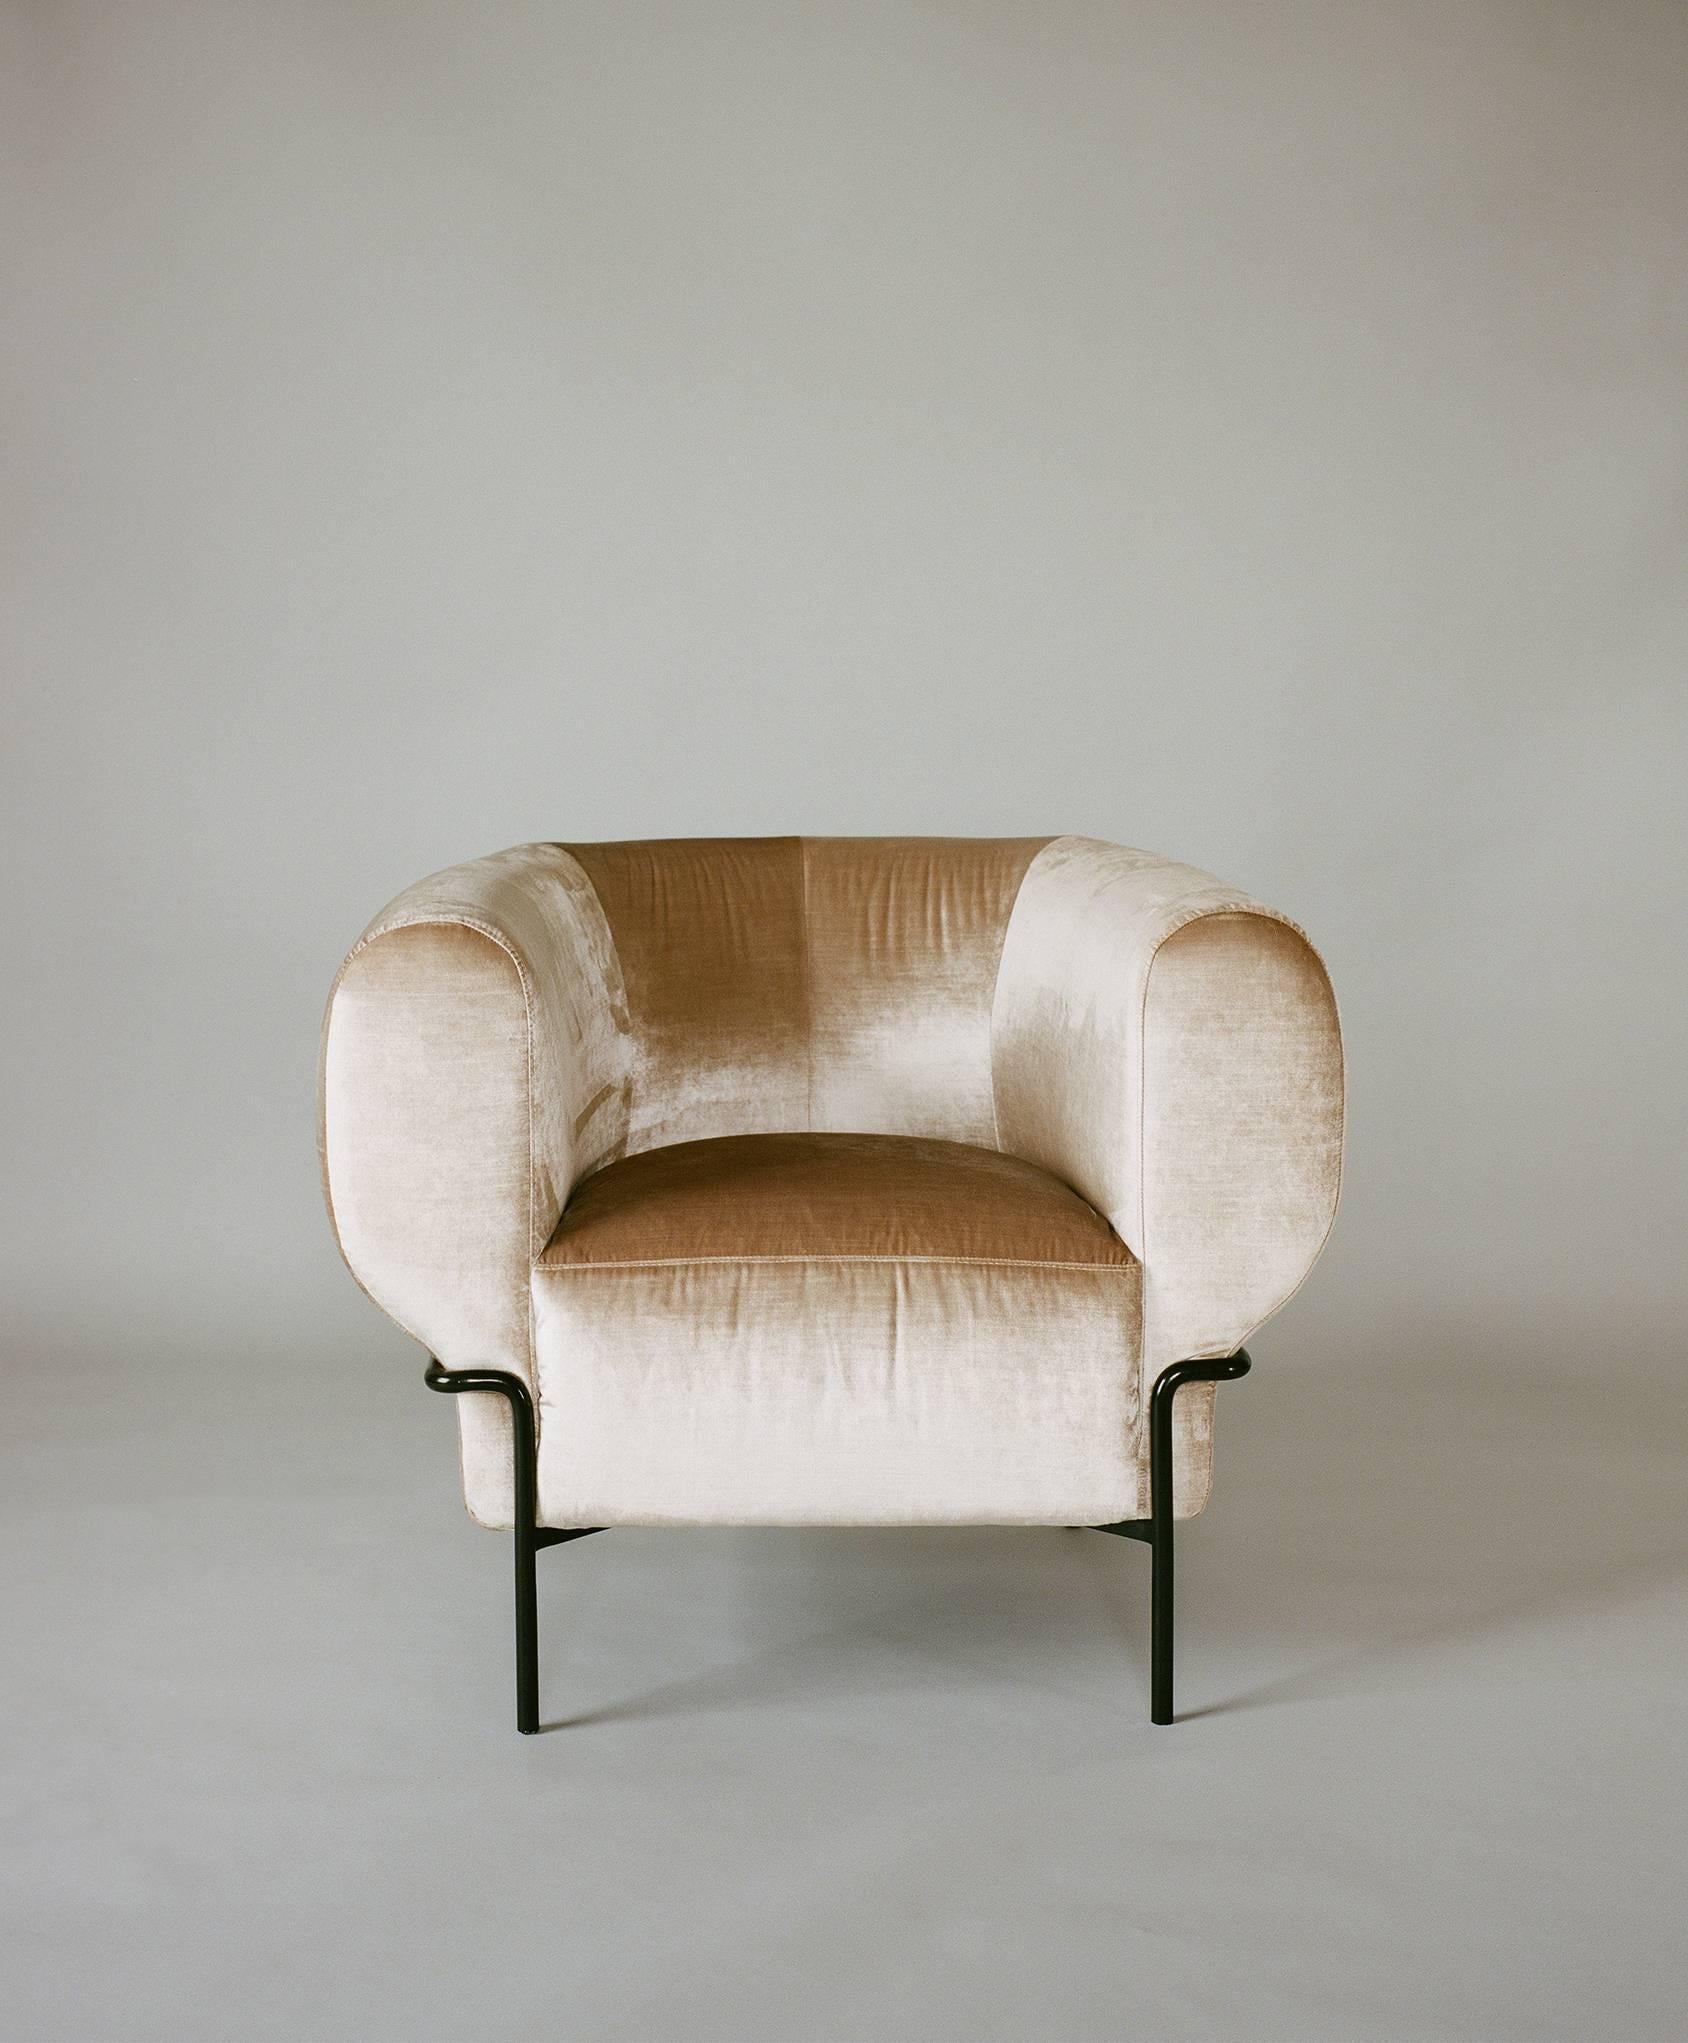 Le Madda est une interprétation contemporaine du fauteuil club classique. La base en métal entoure entièrement la chaise, comme pour la comprimer dans sa zone d'assise supérieure dodue et confortable. 

Disponible dans une variété de matériaux et de